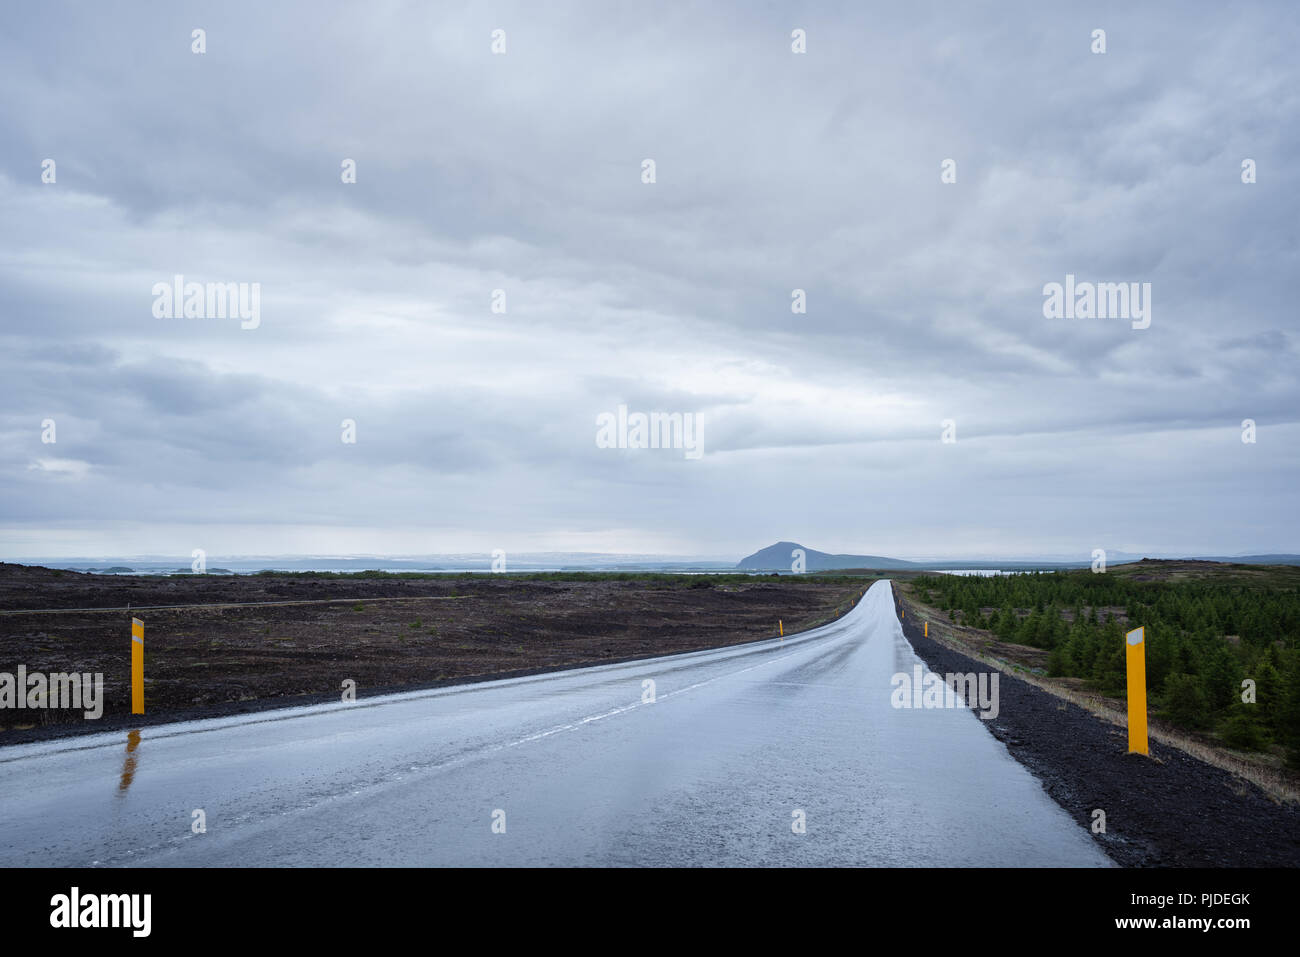 Strada bagnata dopo la pioggia. Cielo tempestoso con nuvole scure. Nei pressi del Lago Myvatn, Islanda Foto Stock